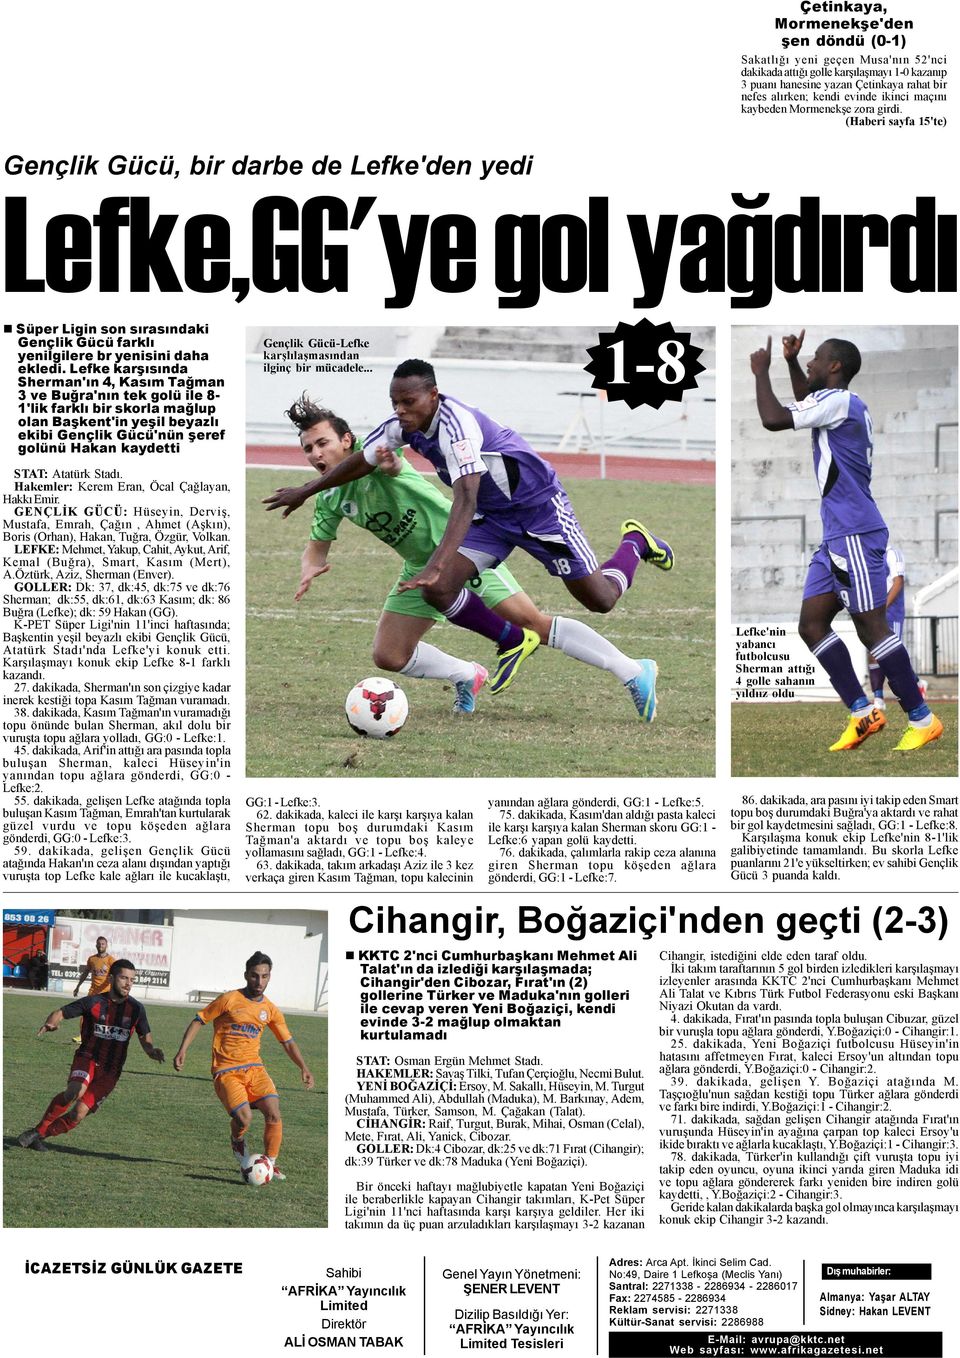 (Haberi sayfa 15'te) Gençlik Gücü, bir darbe de Lefke'den yedi Lefke,GG'ye gol yaðdýrdý Süper Ligin son sýrasýndaki Gençlik Gücü farklý yenilgilere br yenisini daha ekledi.